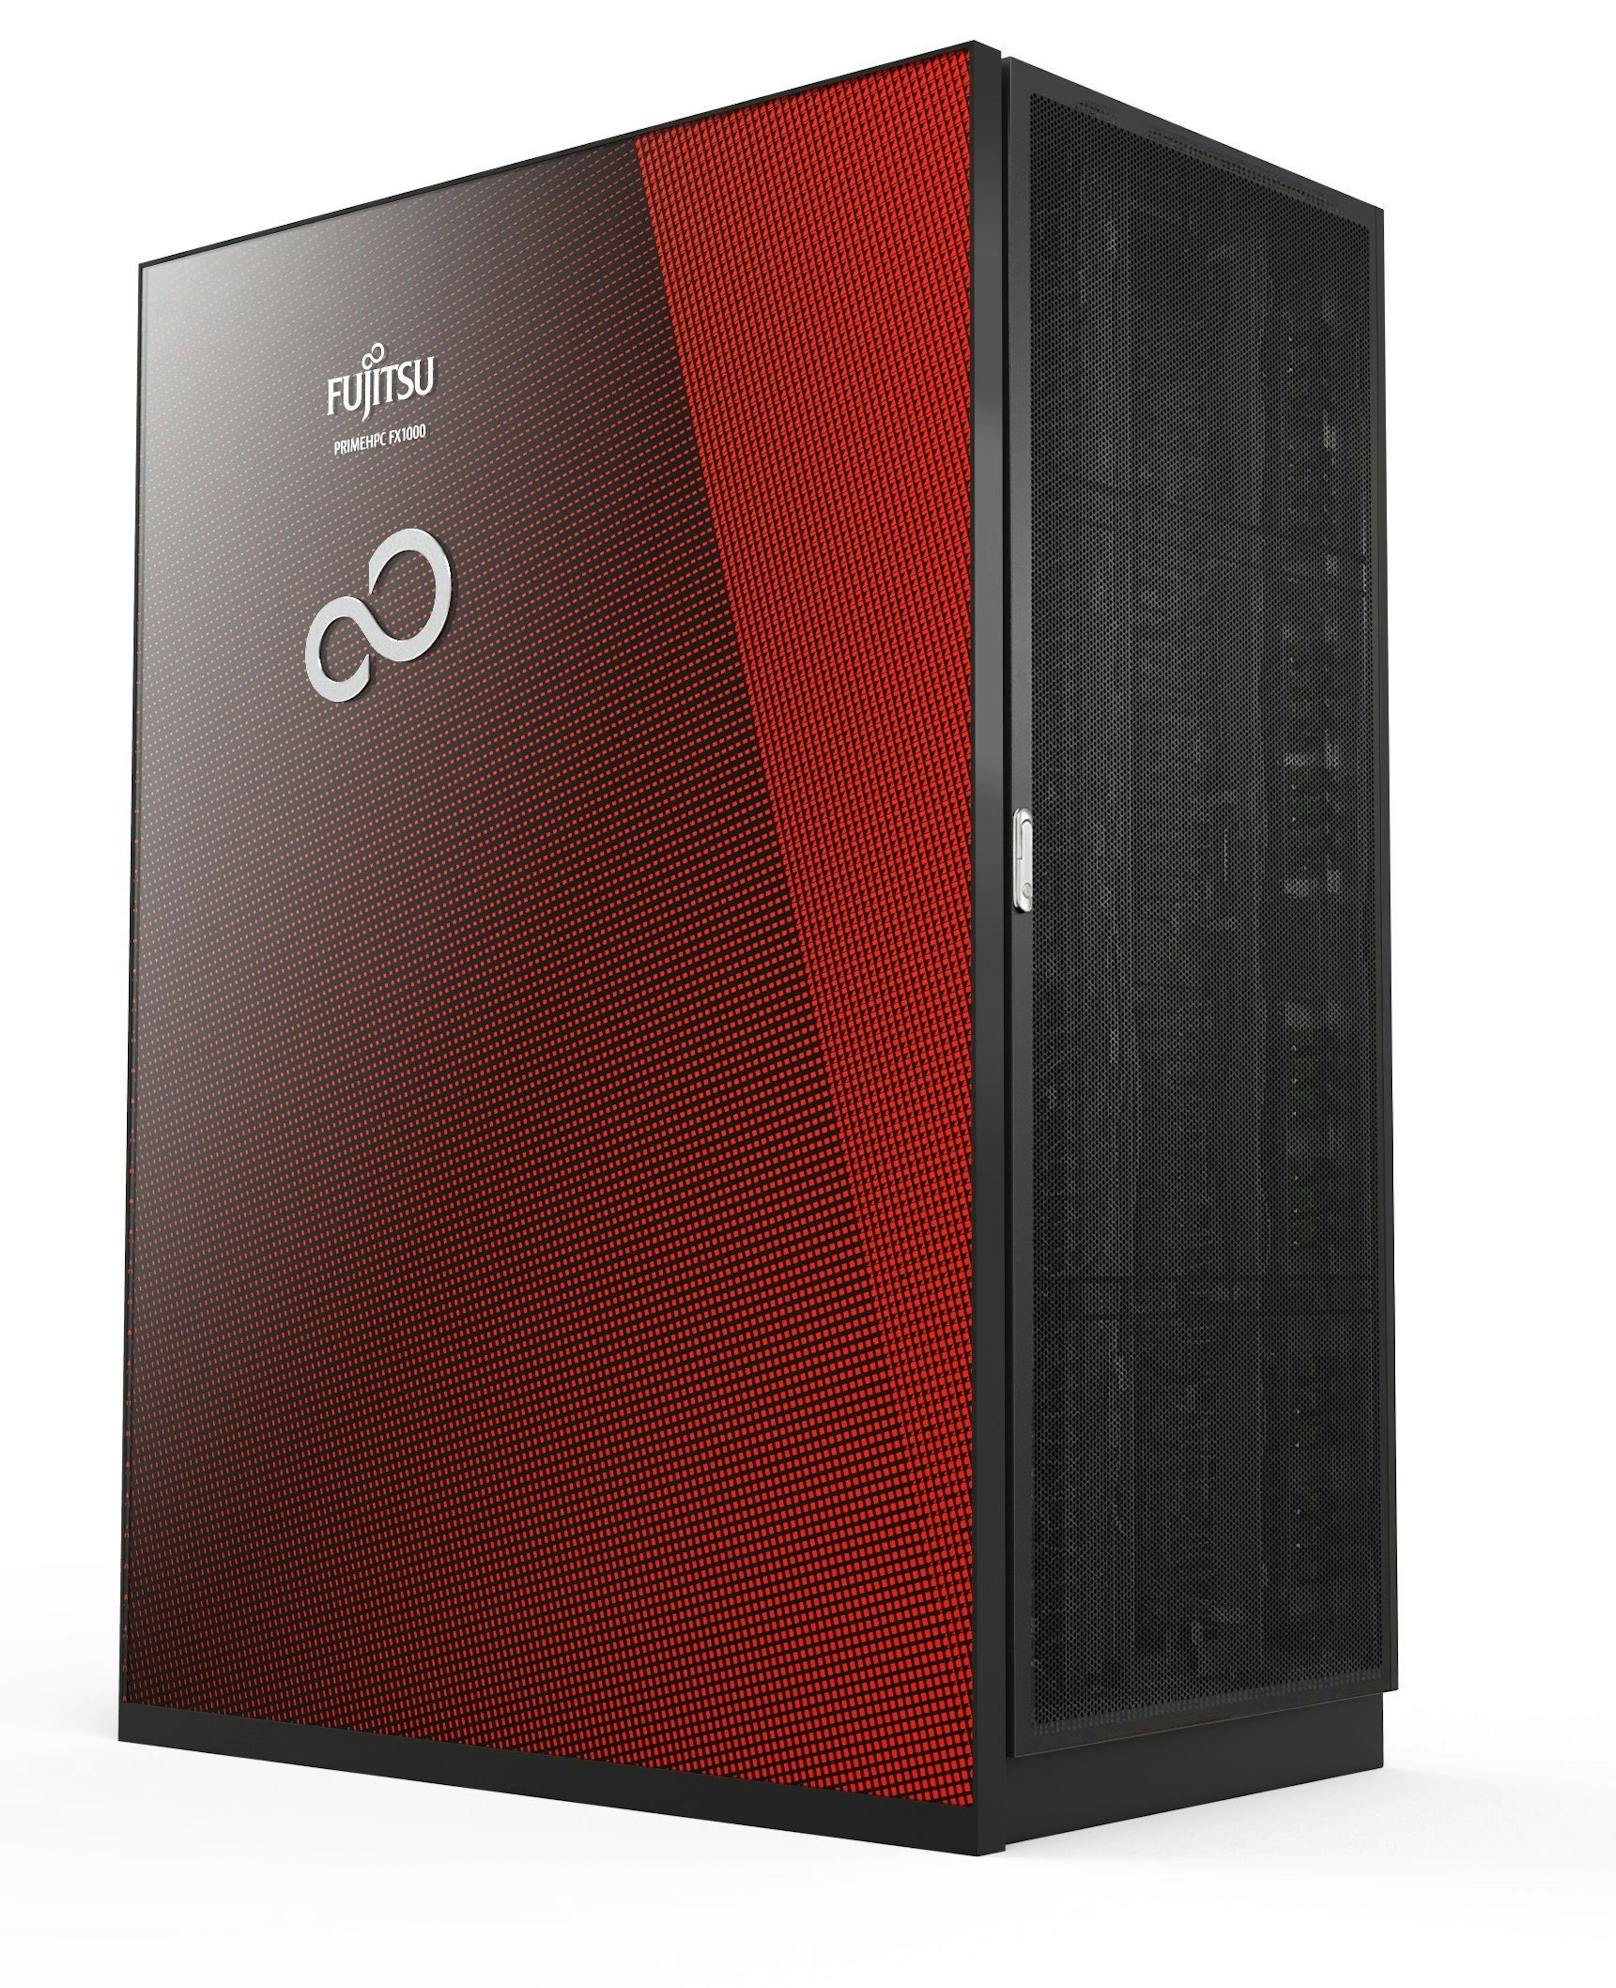 Fujitsu liefert neuen Supercomputer mit 10 PetaFLOPS Rechenleistung für führende Forschungseinrichtungen in Portugal.